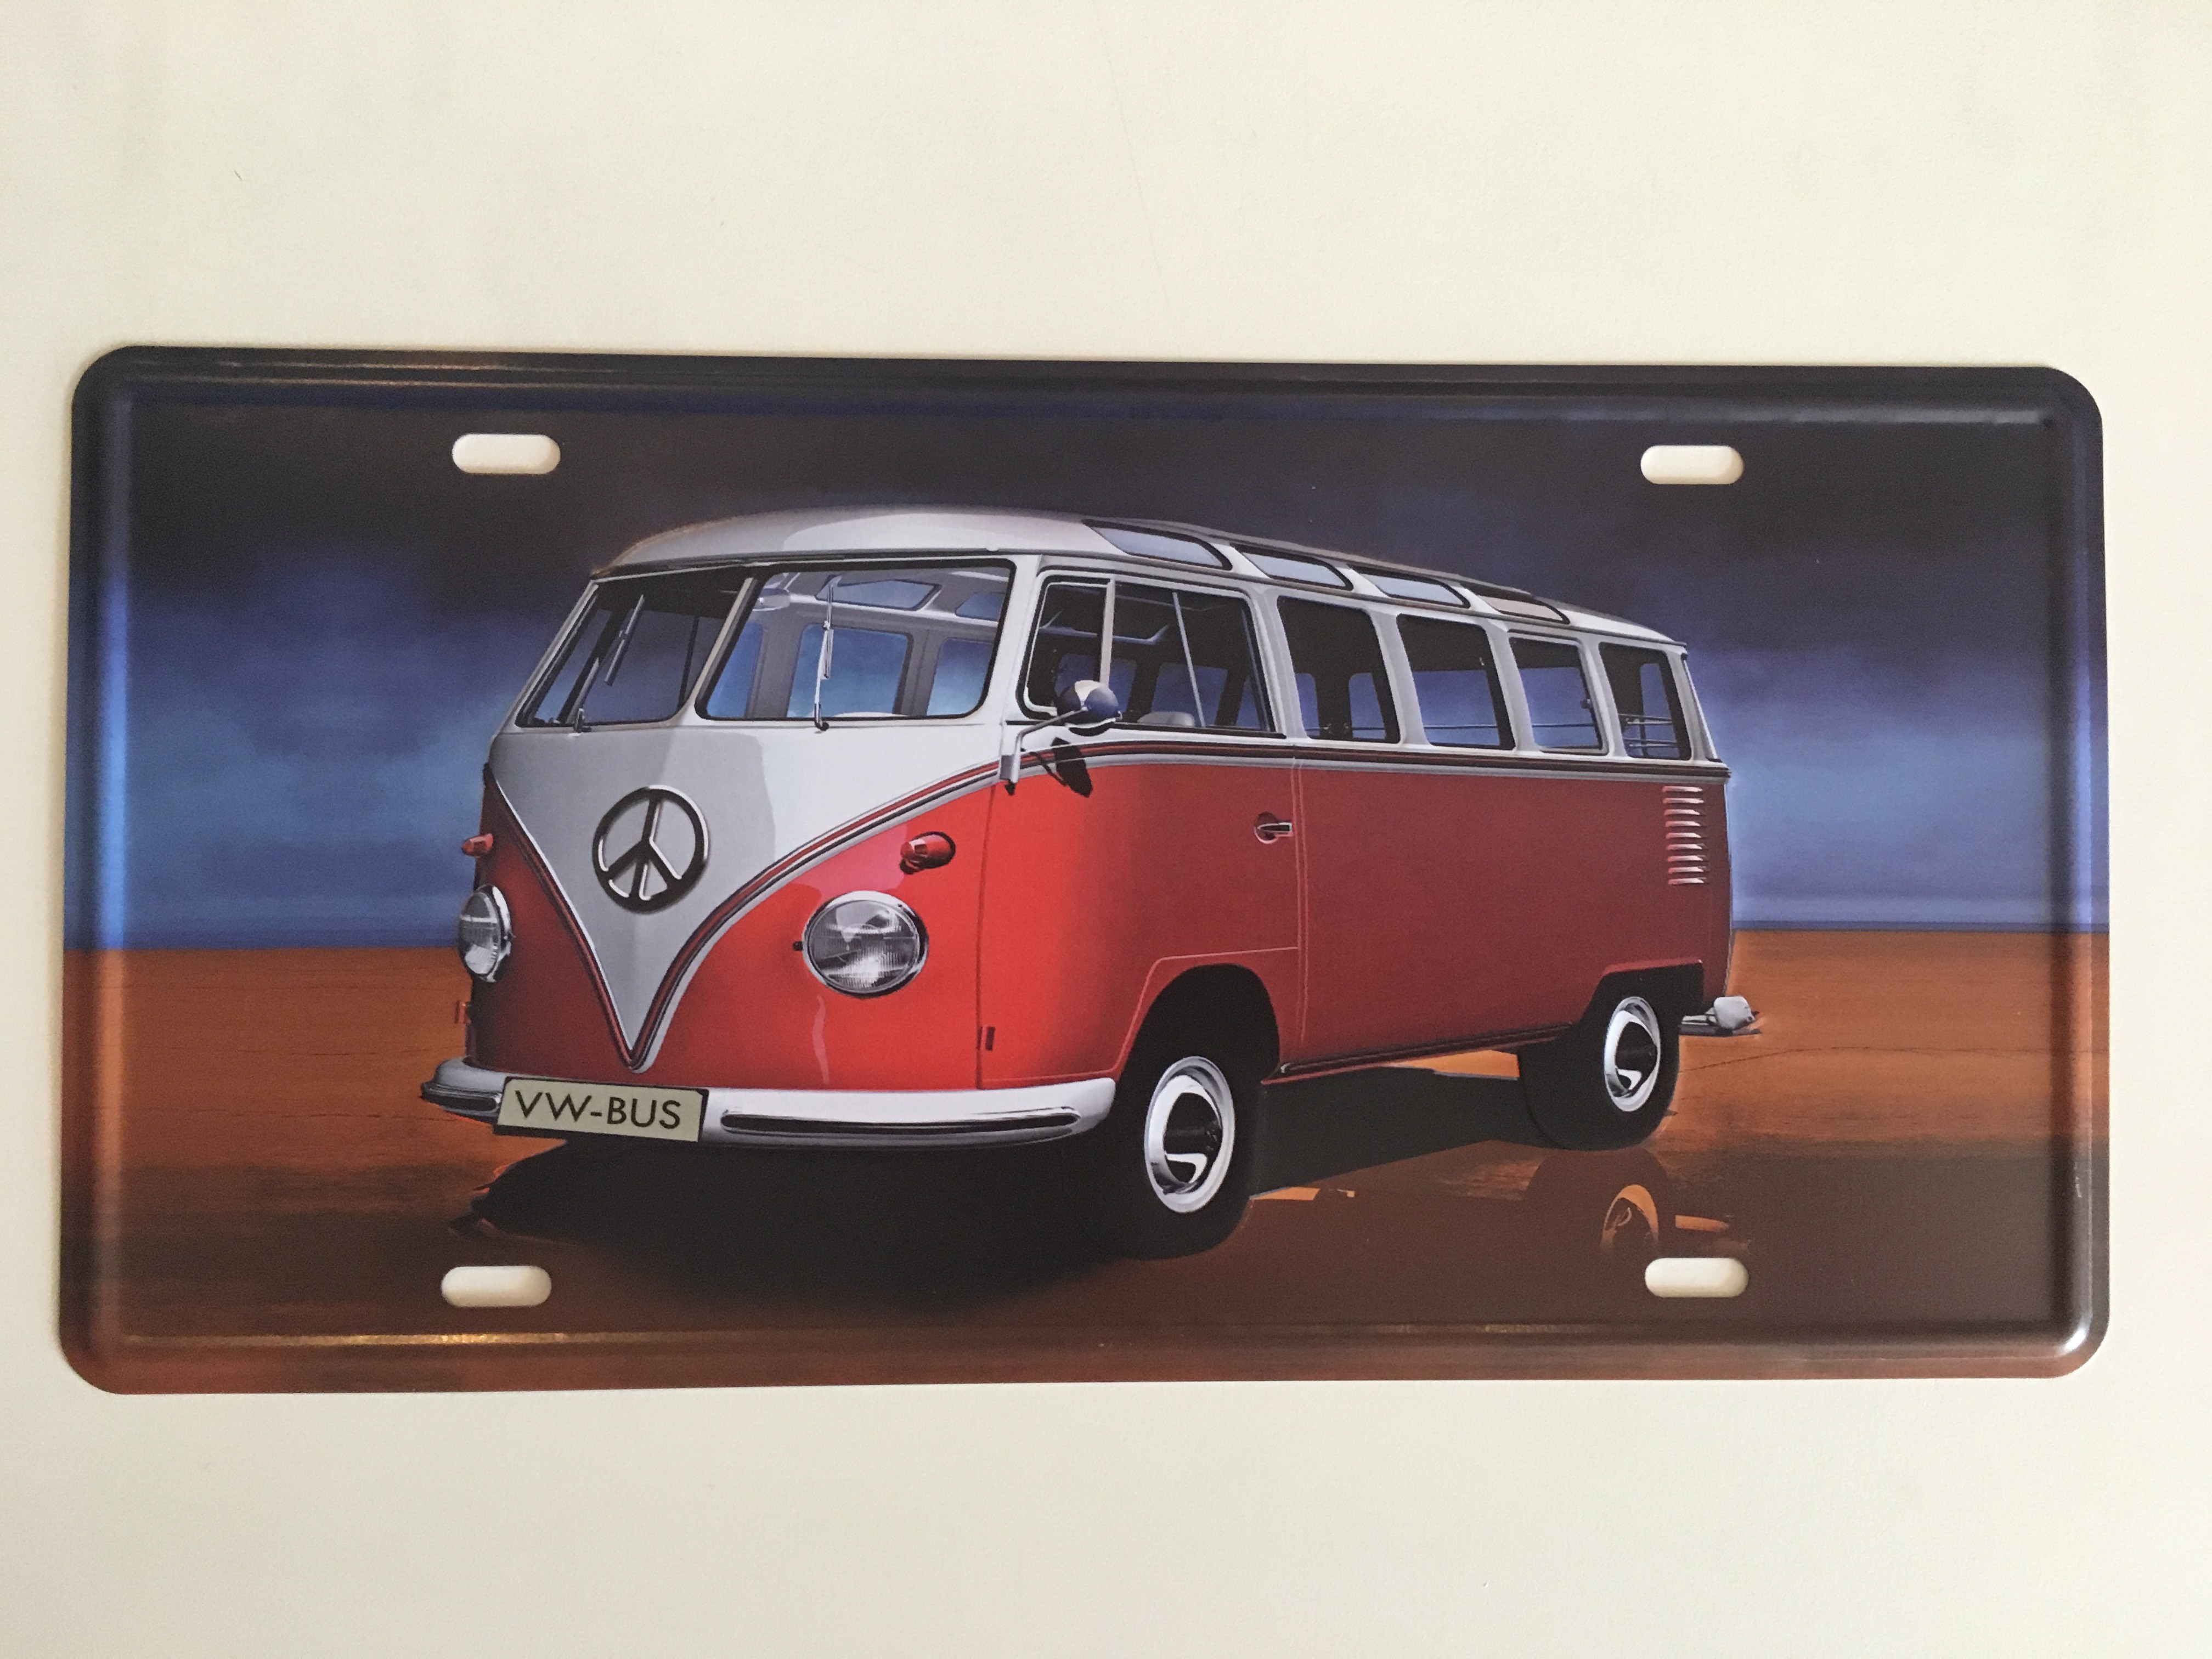 Bom Years ZJM-404-4 Placa de carro decorativo com relevo " V.W. KOMBI "